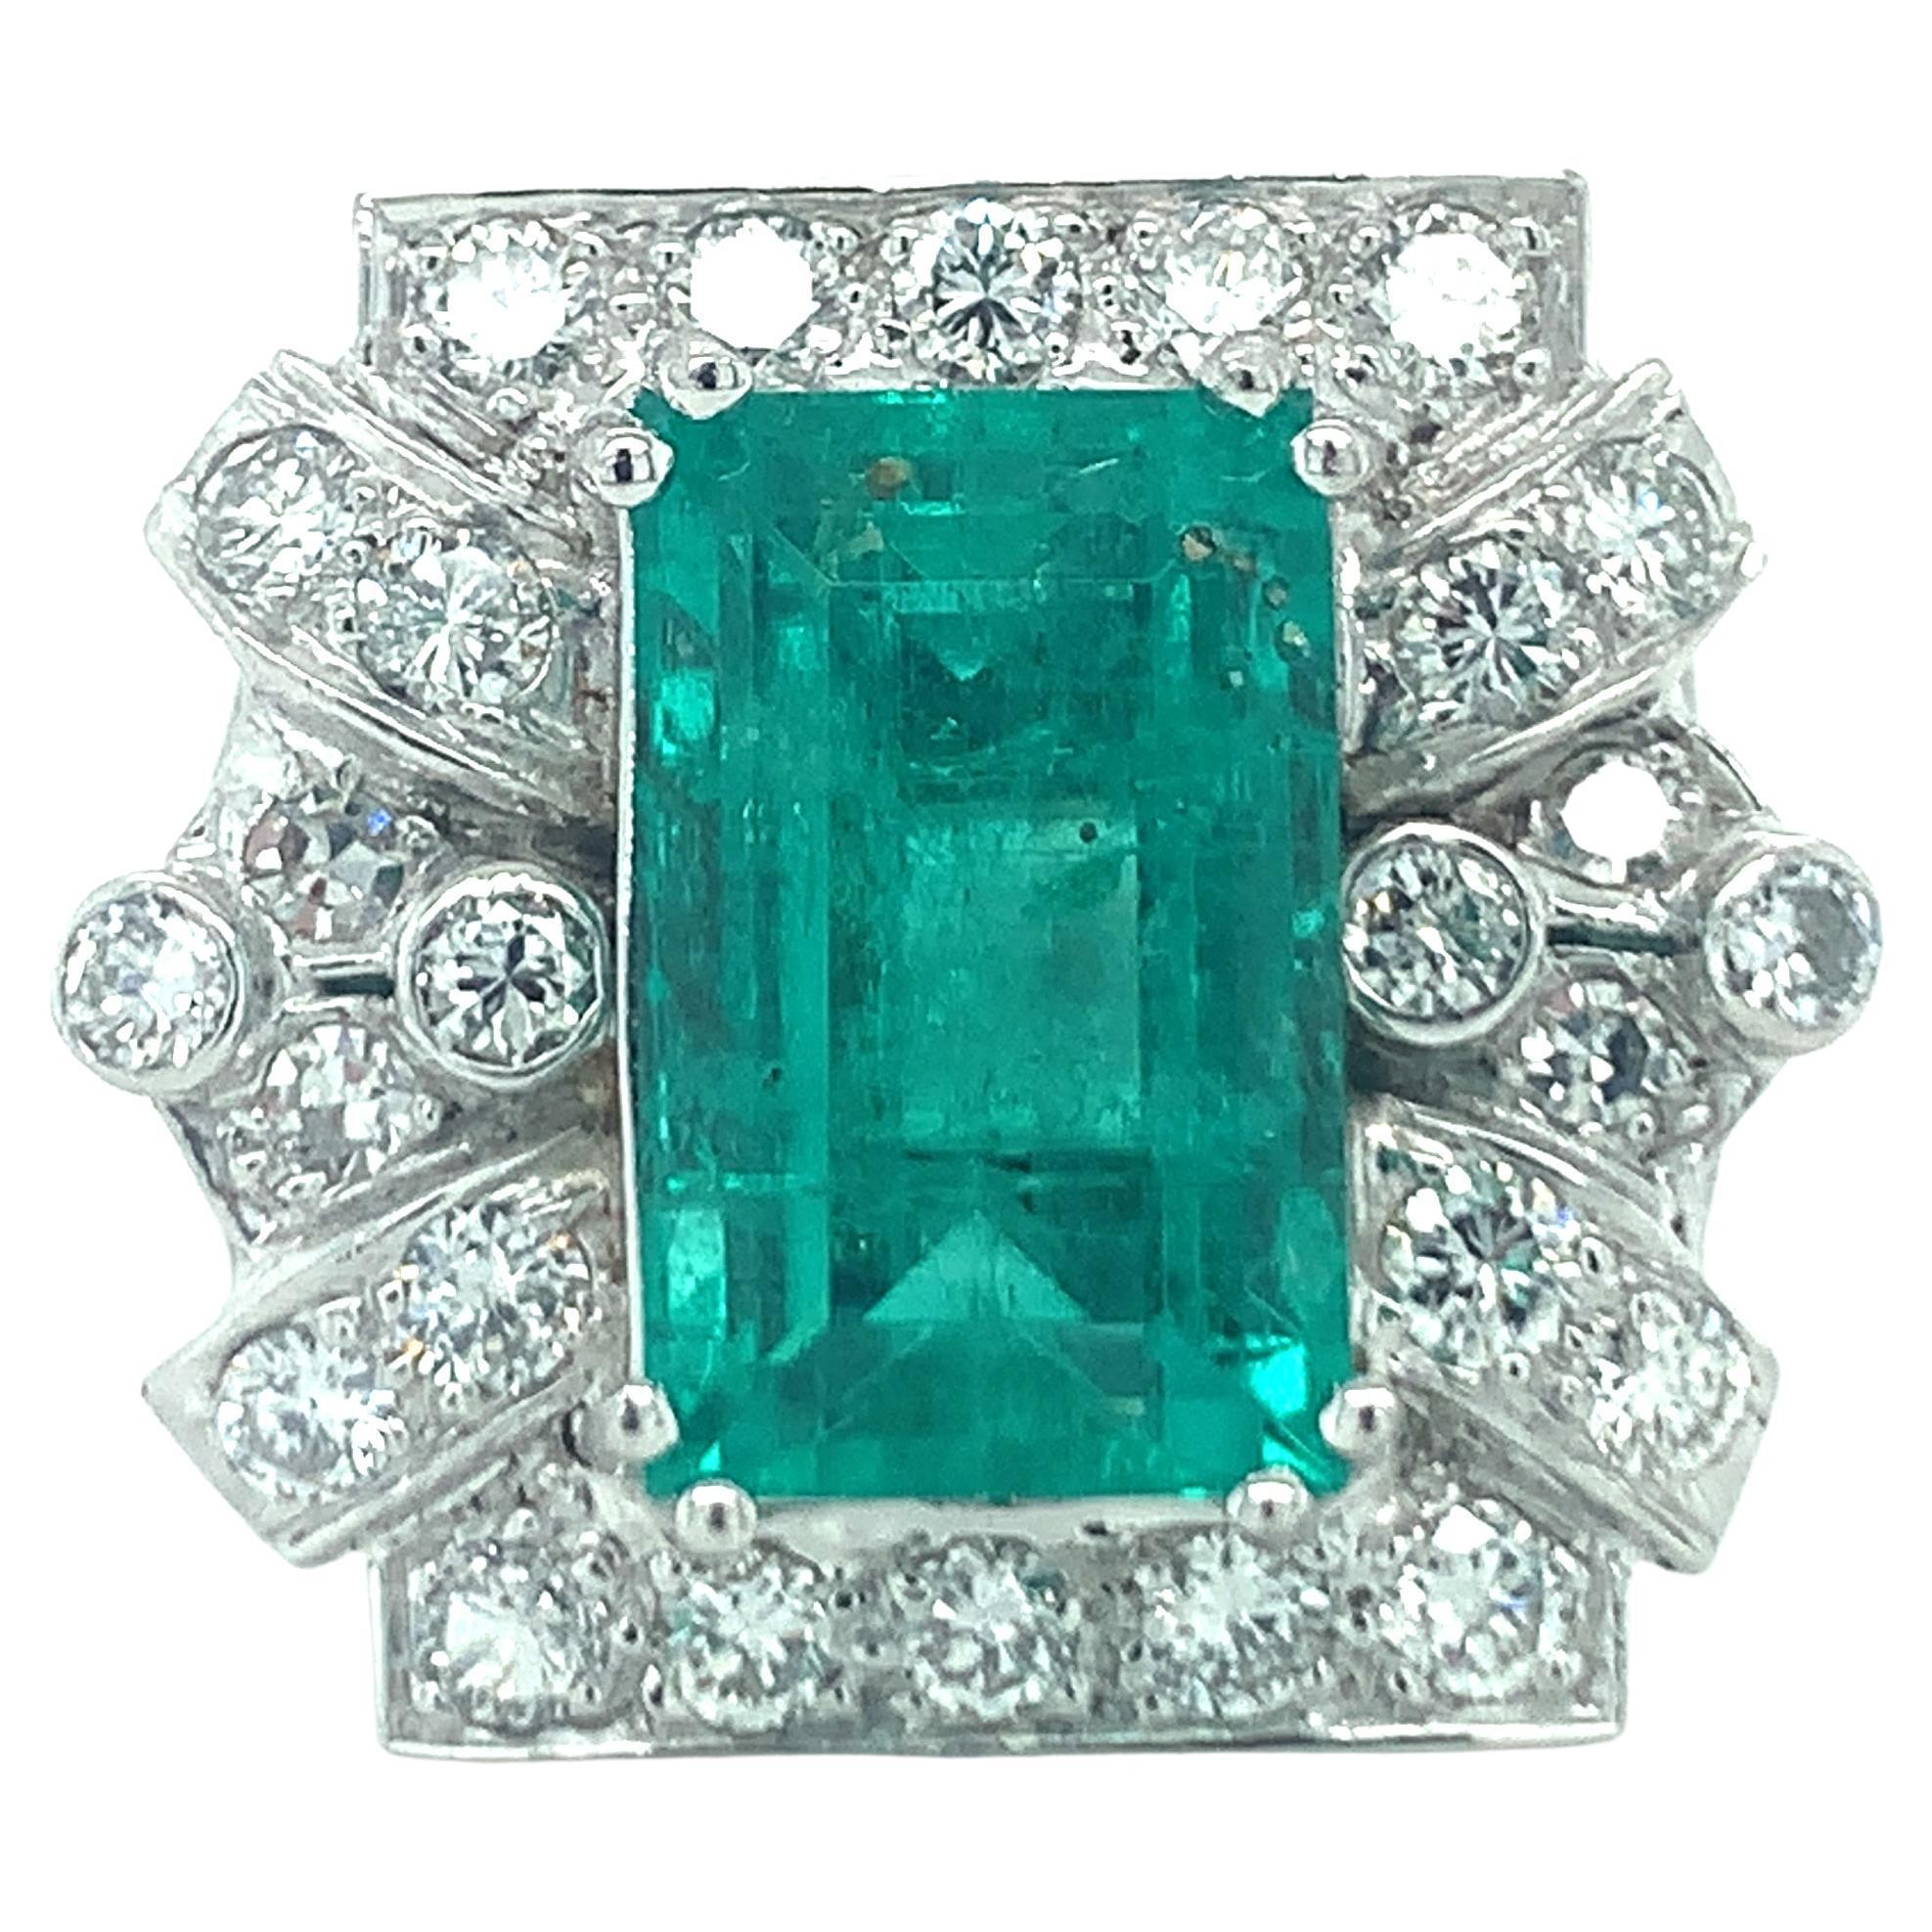 Art Deco Emerald and Diamond Platinum Ring